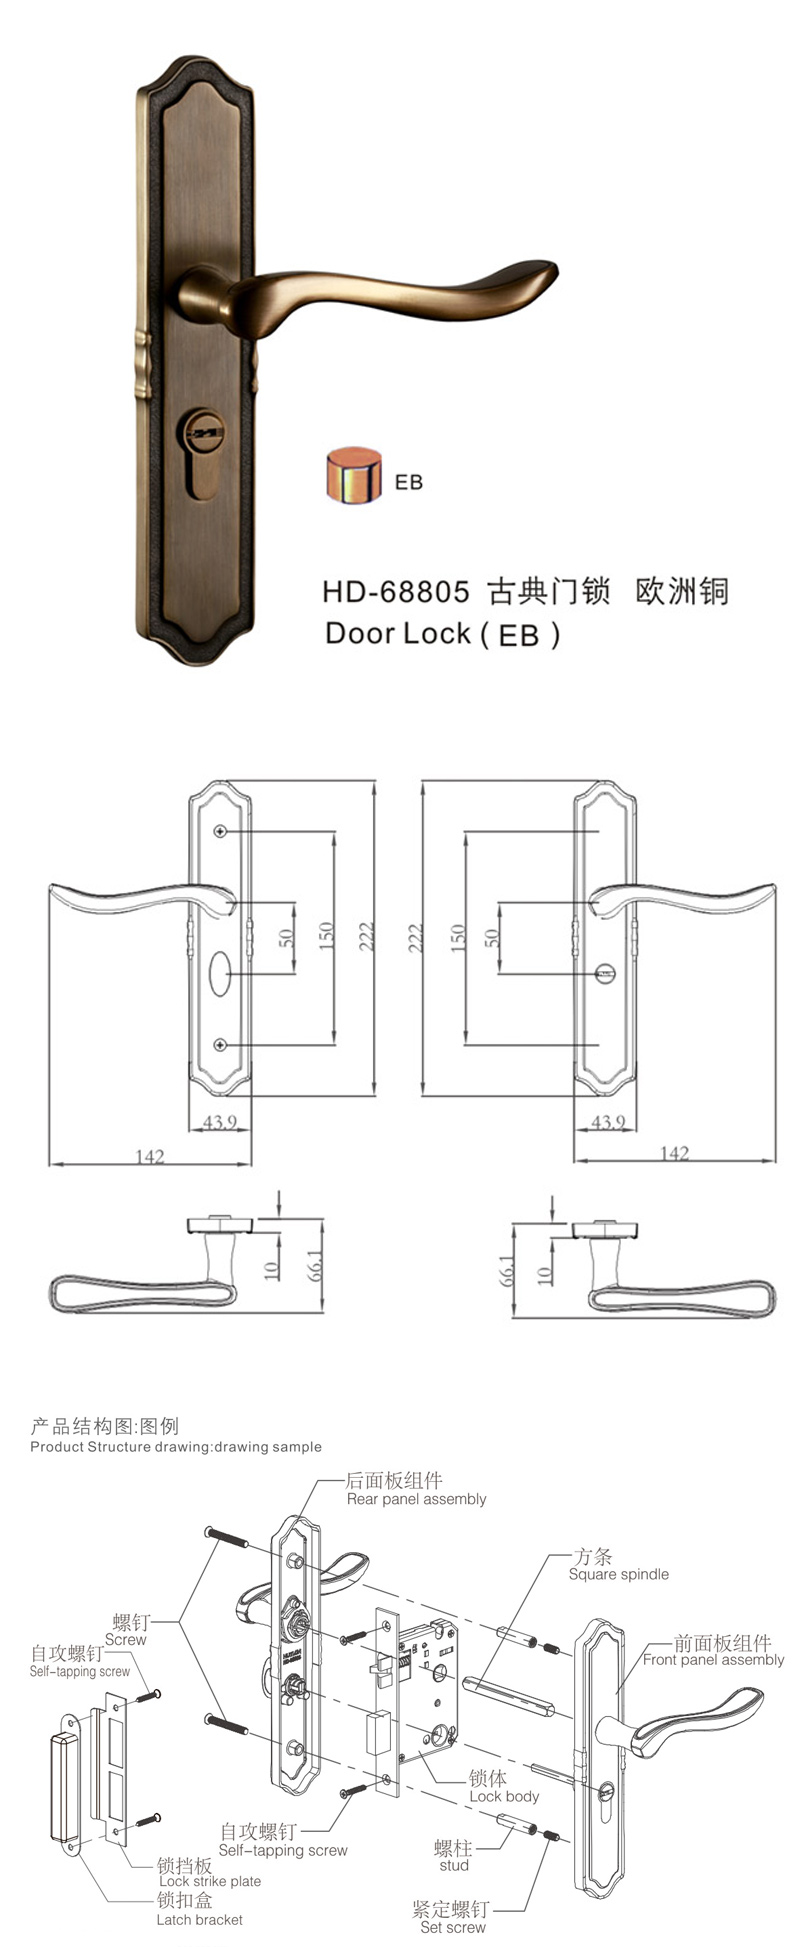 匯泰龍HD-68805尊享系列門鎖